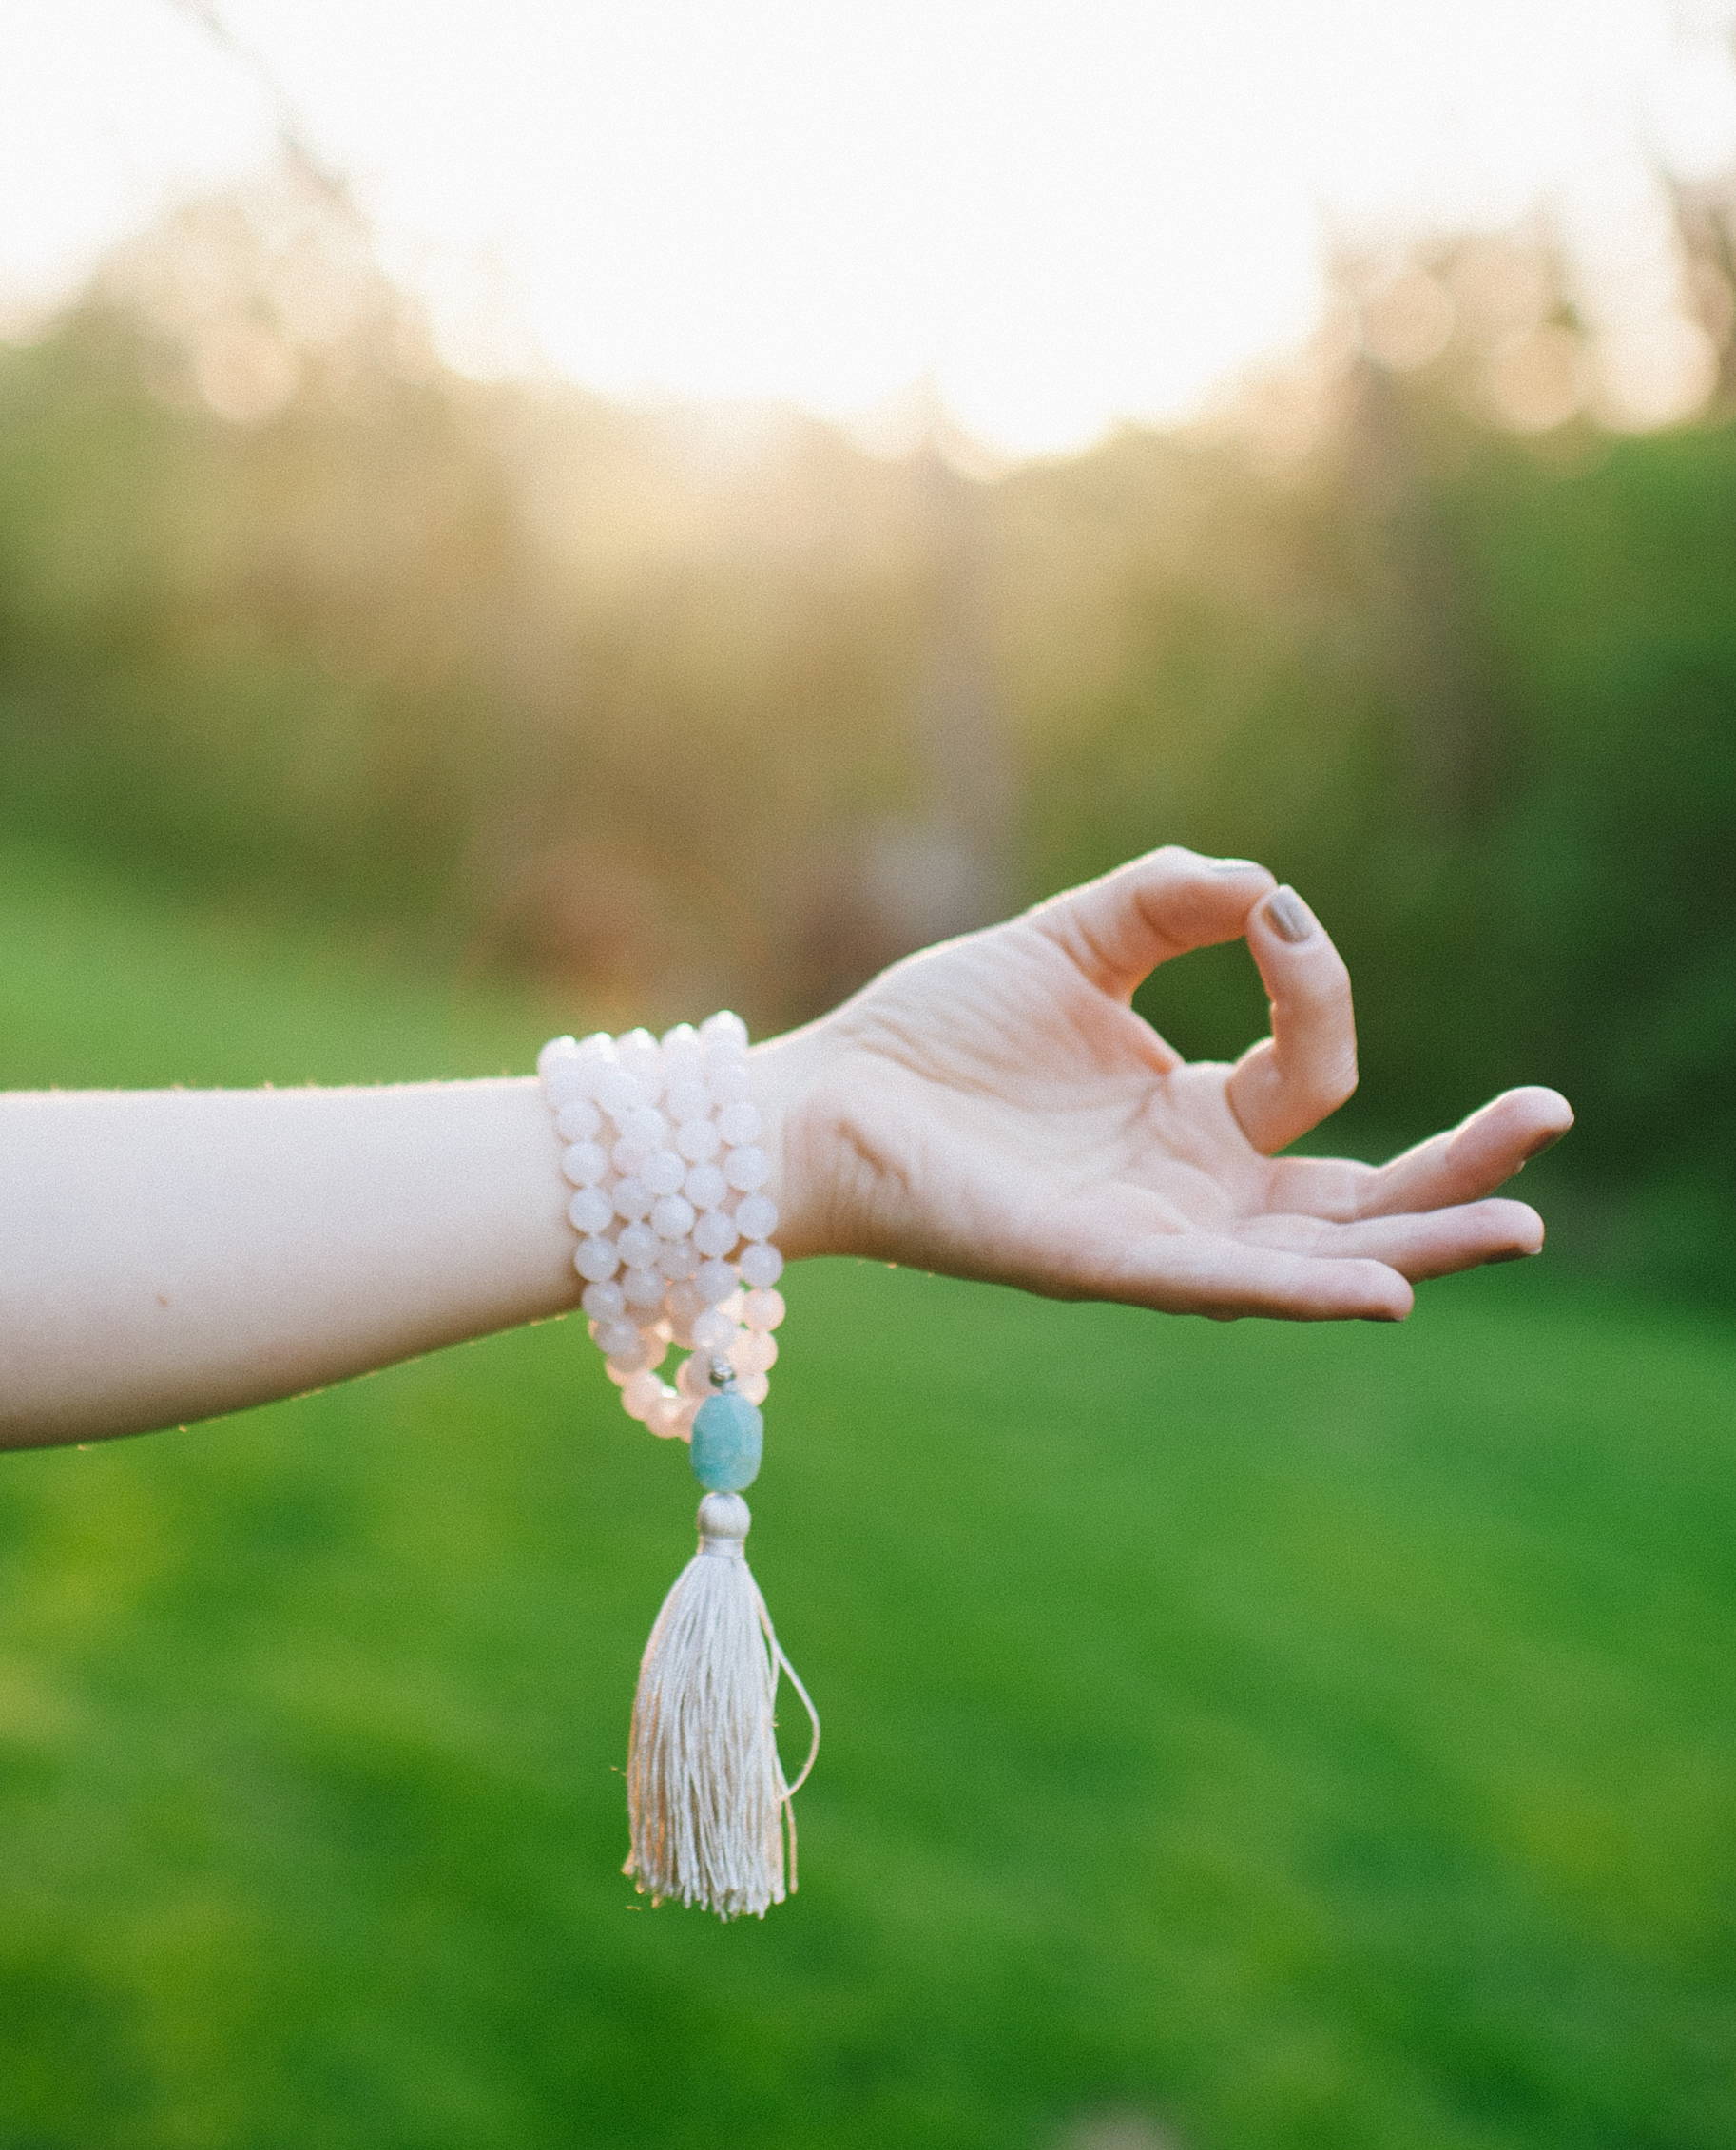 Cream Mala: 108 Bone Bead Spacers, Yoga Inspired Jewelry Making